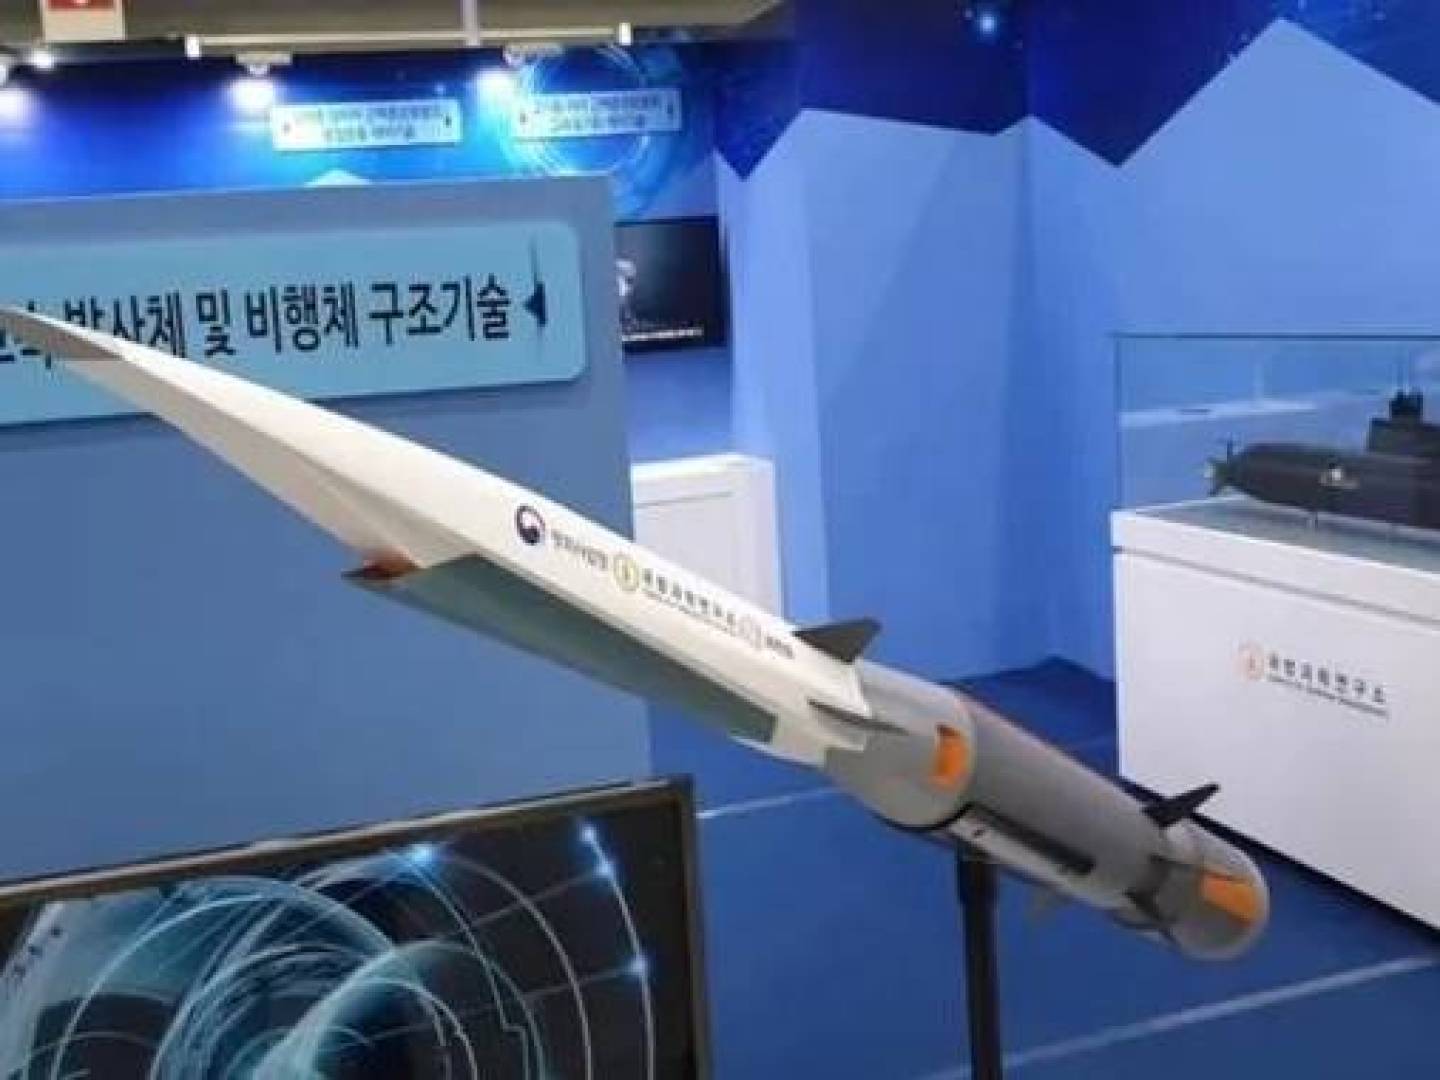 بالفيديو كوريا الجنوبية تطور أسلحة جديدة وصواريخ فرط صوتية